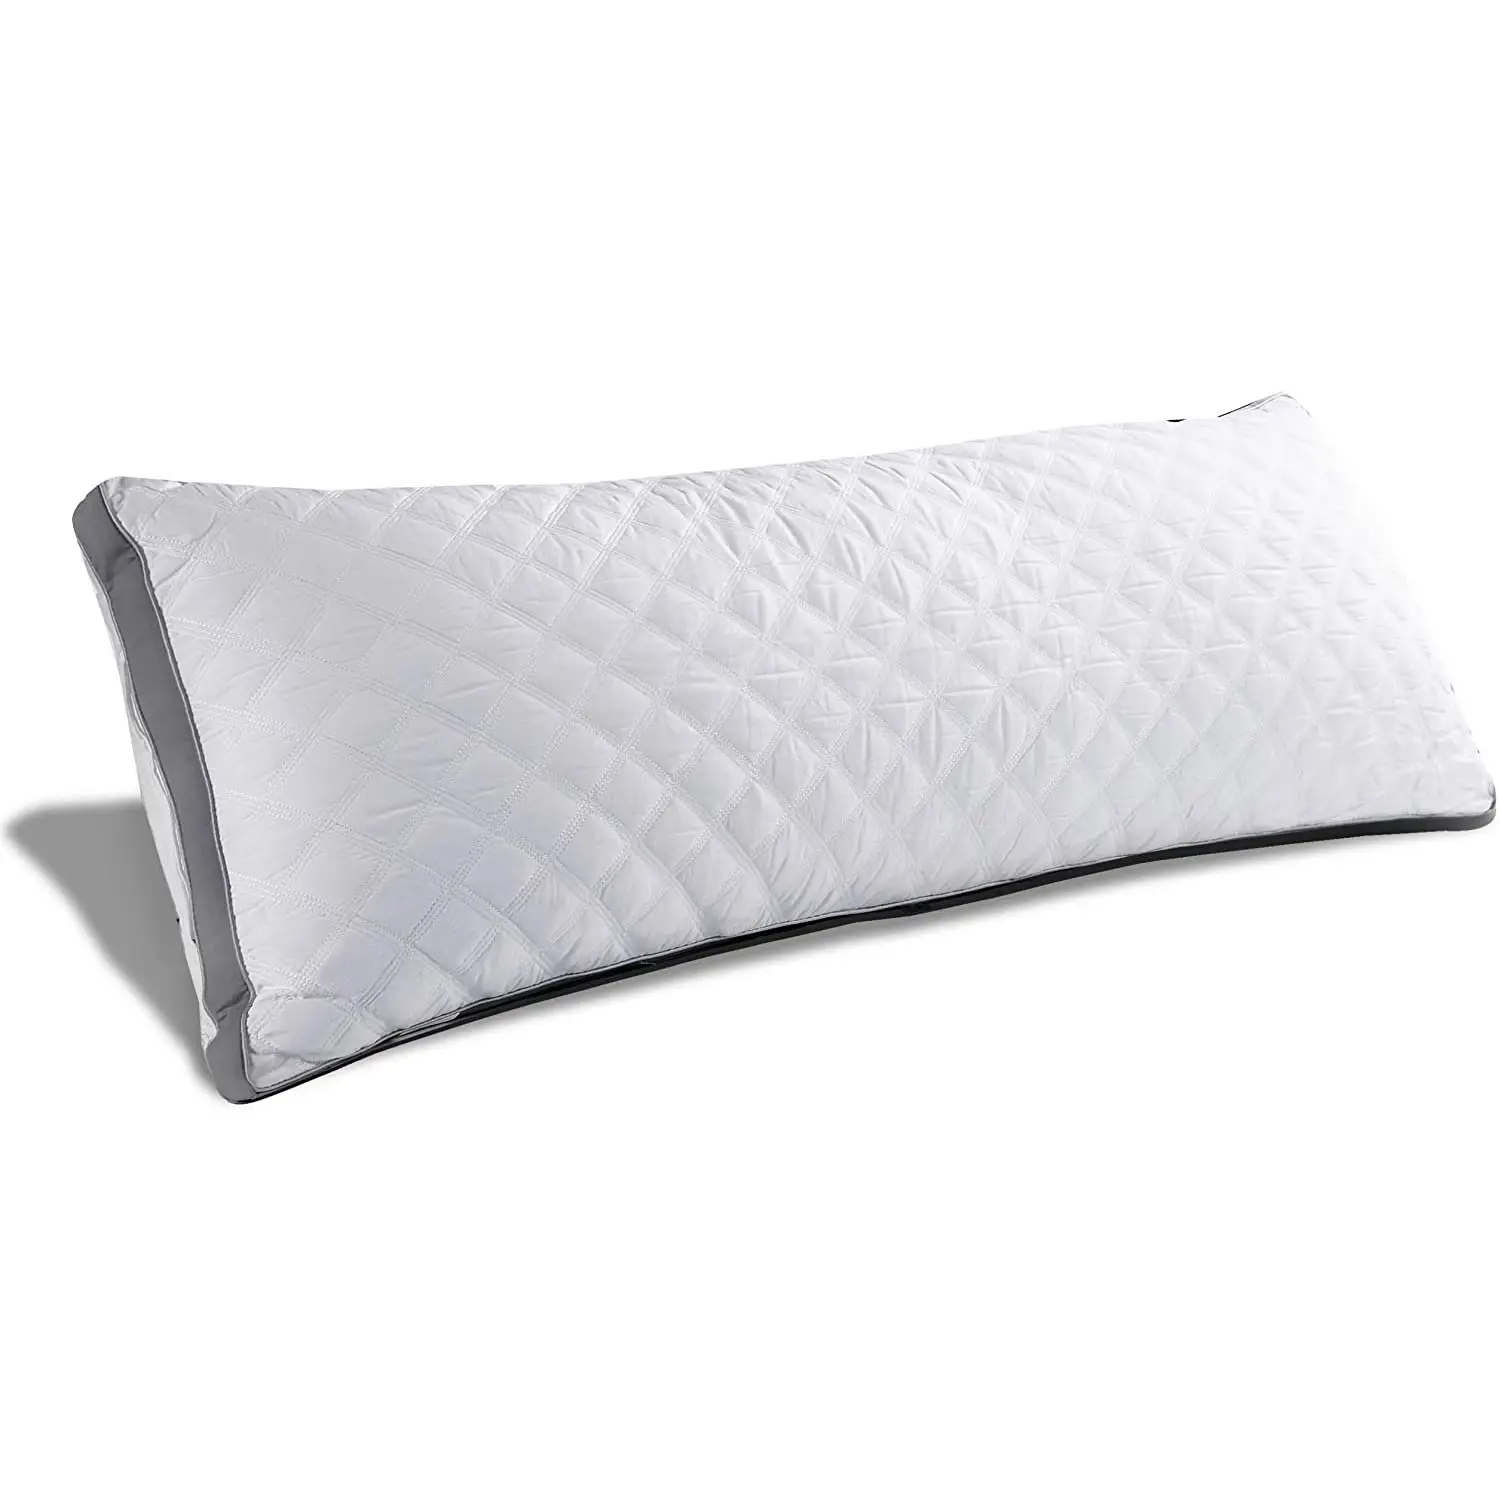 Almohada larga plegable y suave para Hotel, almohadas decorativas rectangulares largas para cama, color blanco, fácil de limpiar